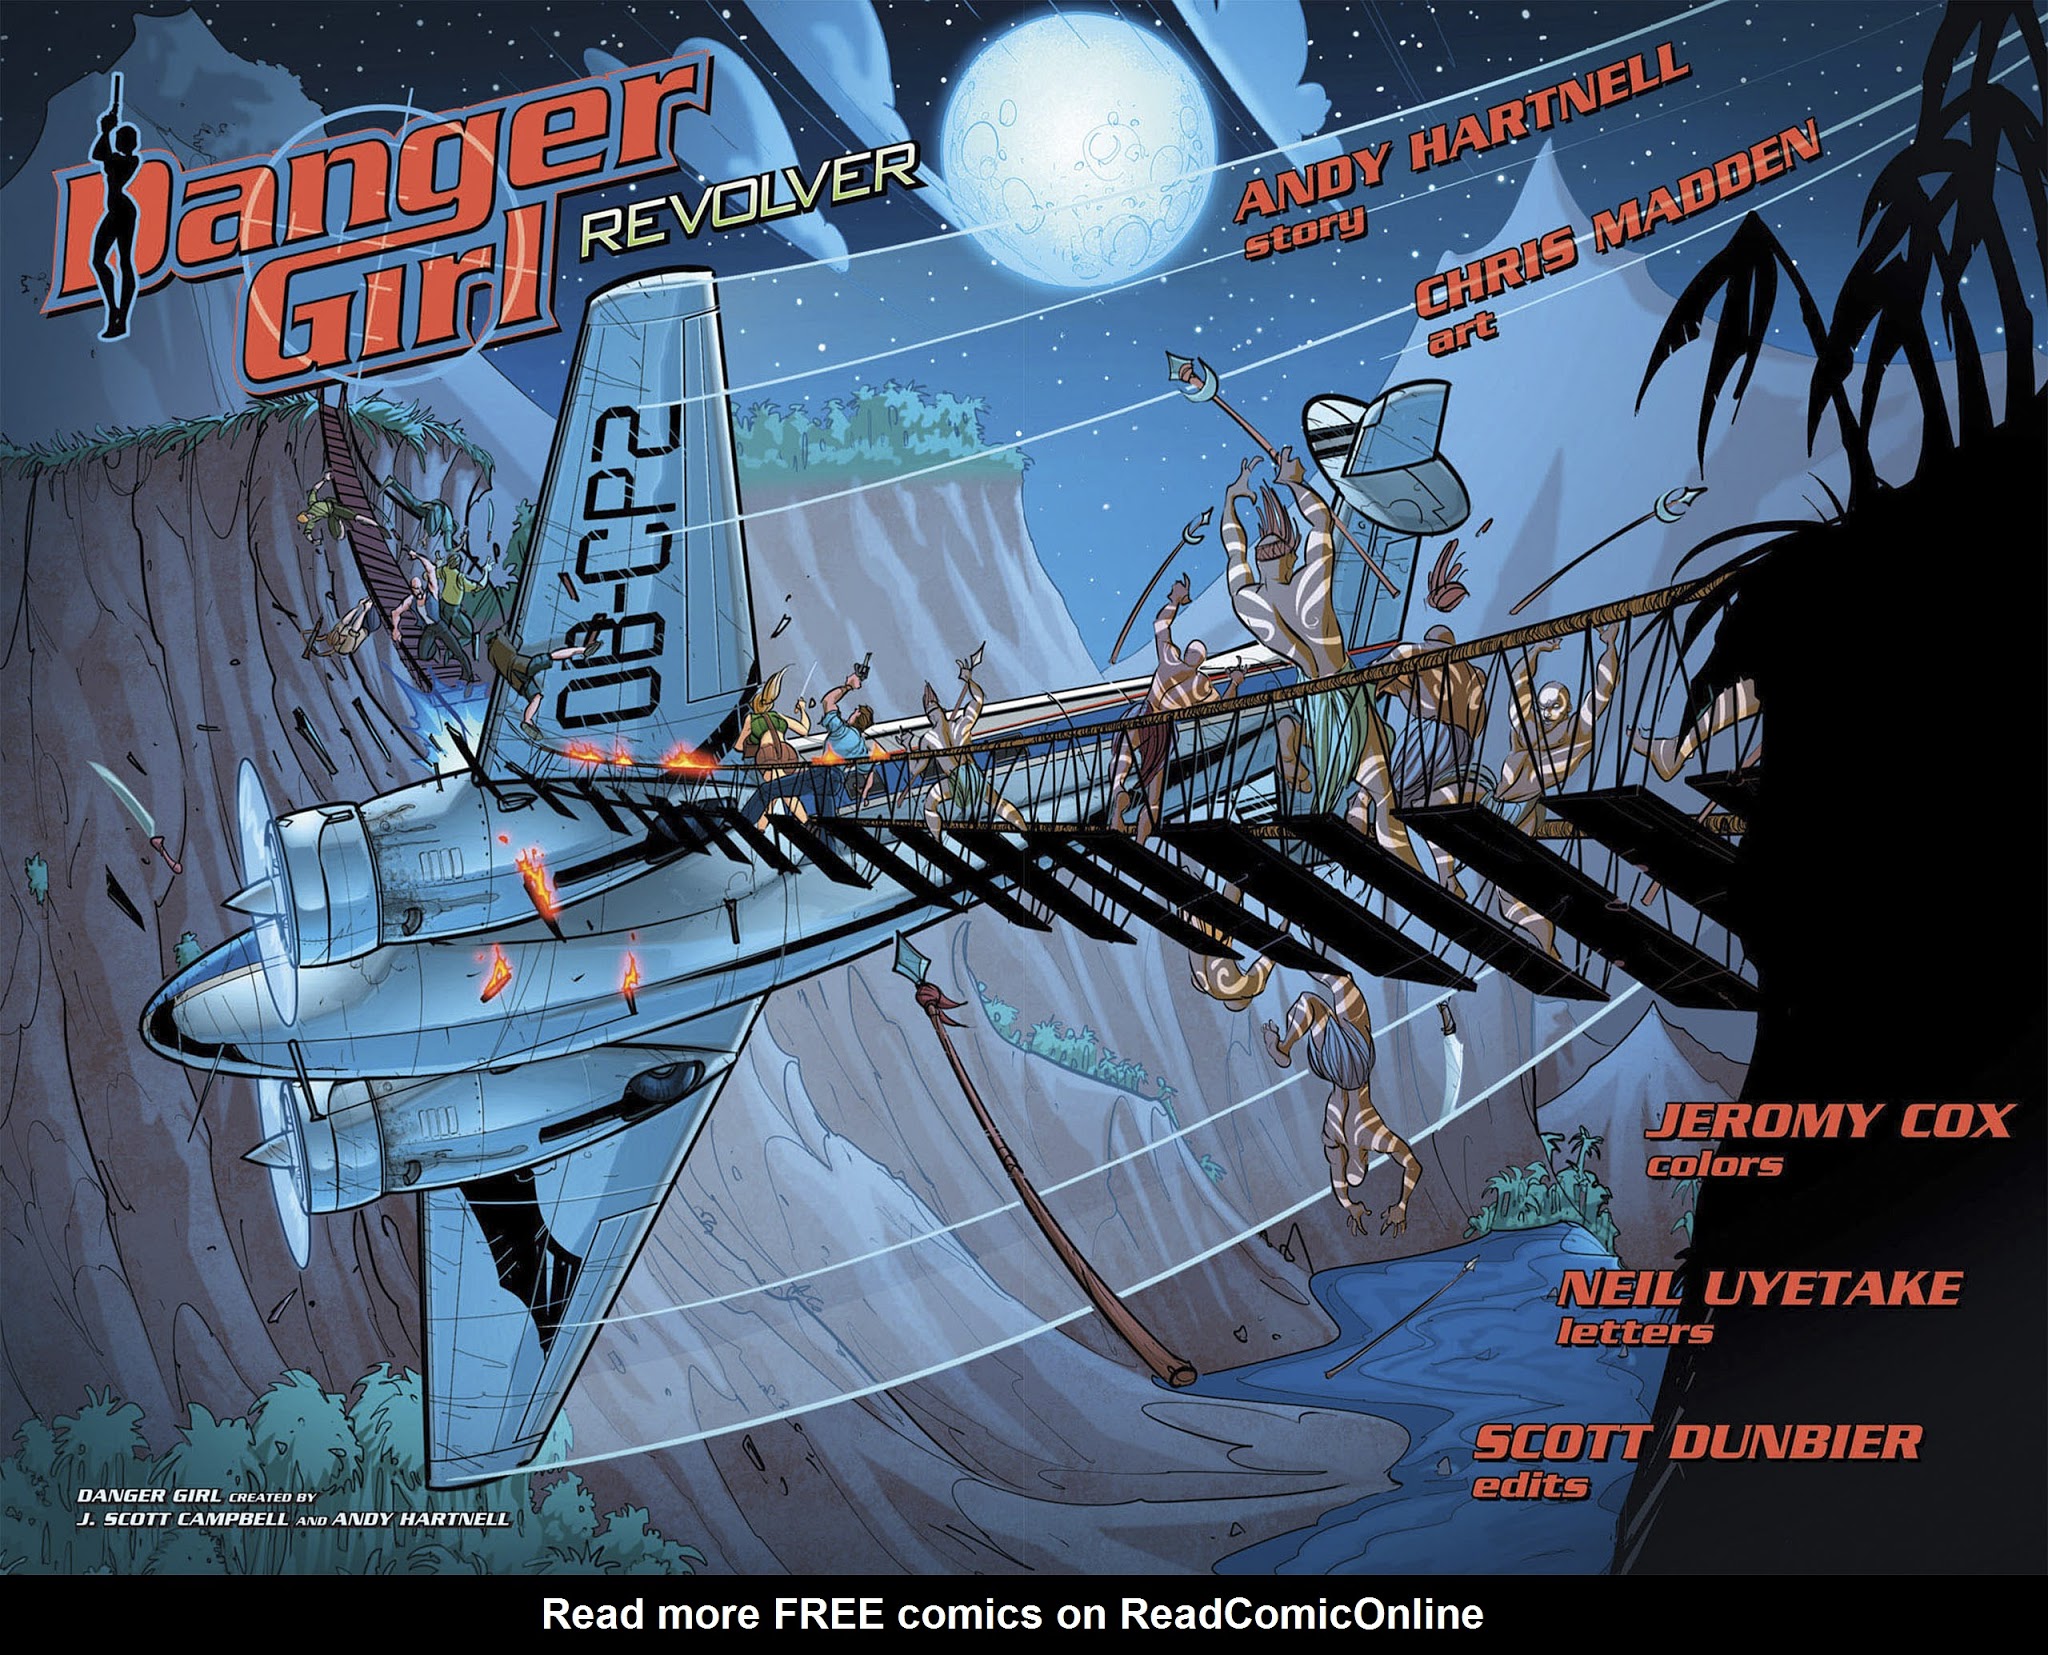 Read online Danger Girl: Revolver comic -  Issue #2 - 9